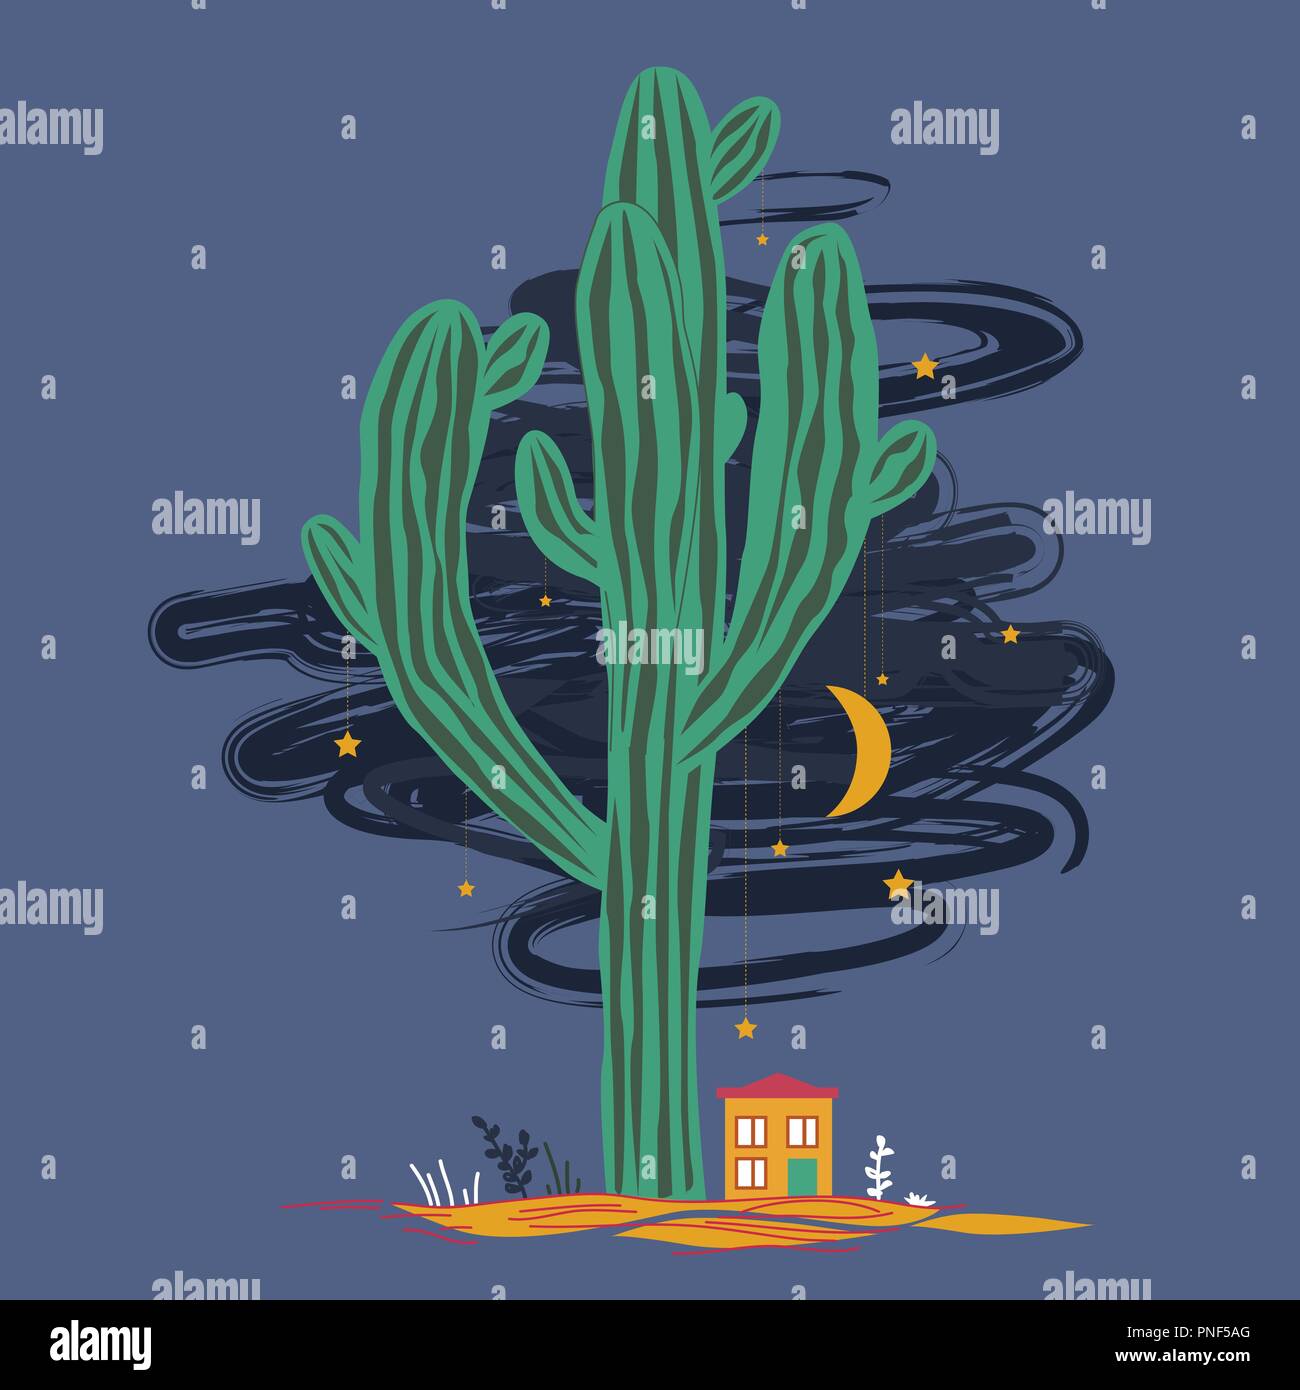 Cute Abbildung mit hoher Saguaro, kleines Haus, und die Sterne und Mond hängen auf der Kakteen. Mexikanische märchenhafte Landschaft, Drucken für Karten, neues Jahr, oder Te Stock Vektor